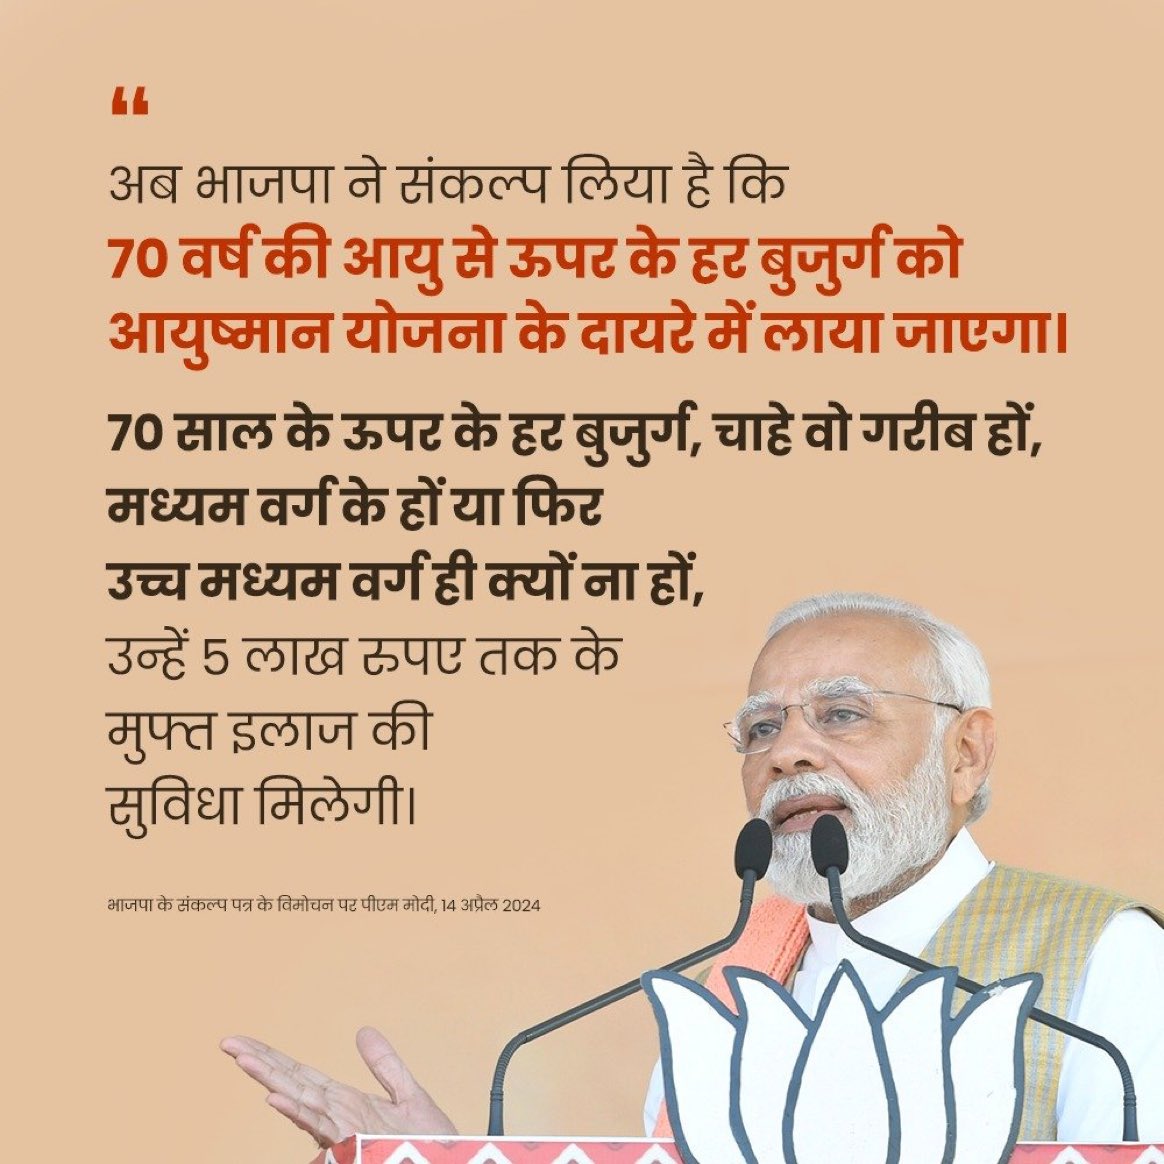 भाजपा ने संकल्प लिया है कि 70 वर्ष की आयु से ऊपर के हर बुजुर्ग को आयुष्मान योजना के दायरे में लाया जाएगा: PM @narendramodi #ModiKiGuarantee